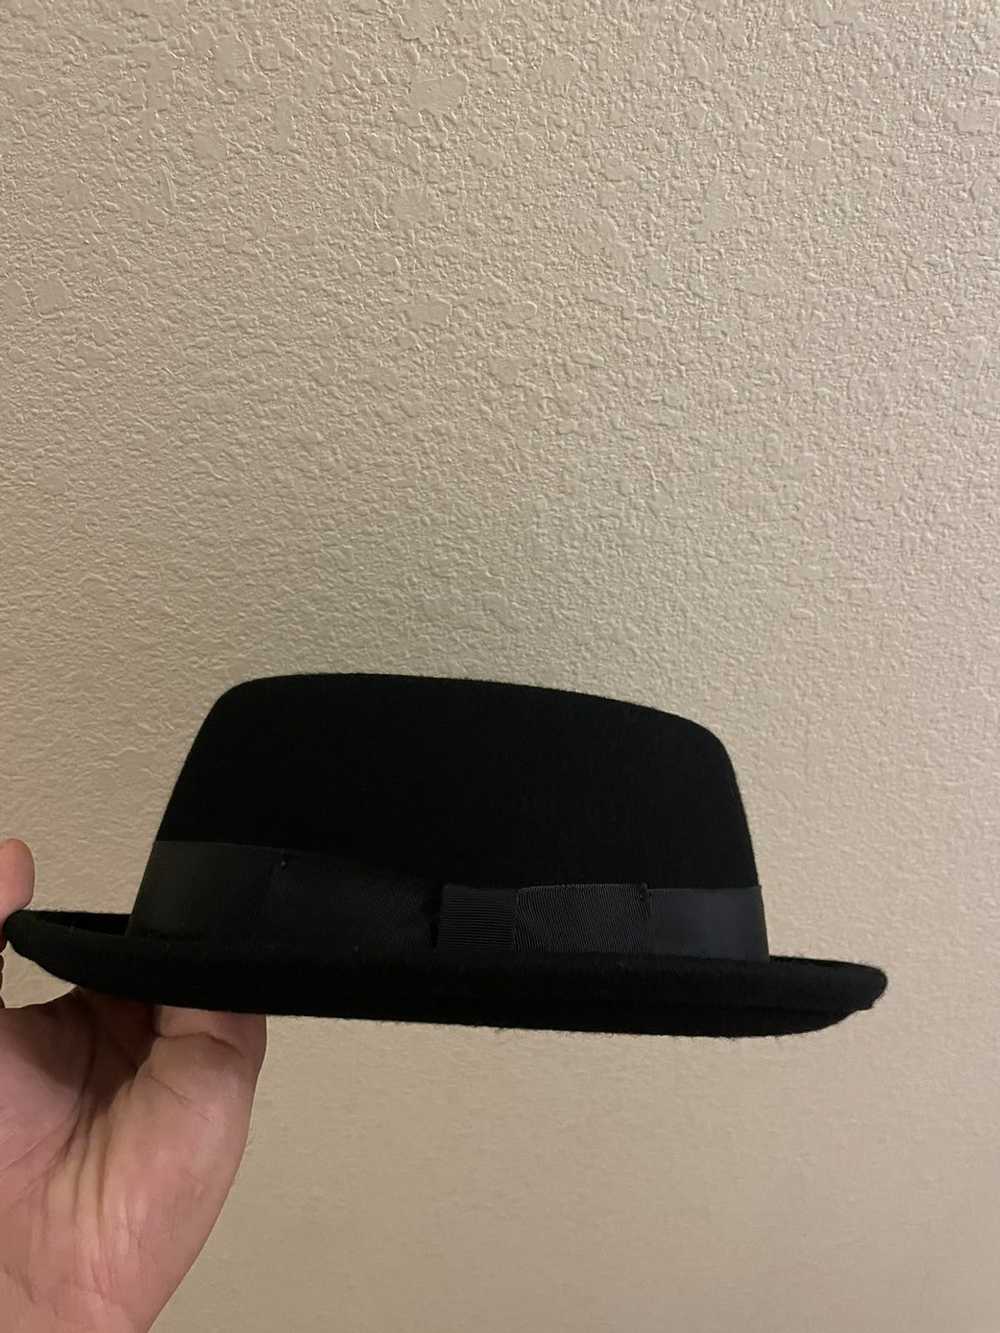 Bailey Heisenberg hat - image 2